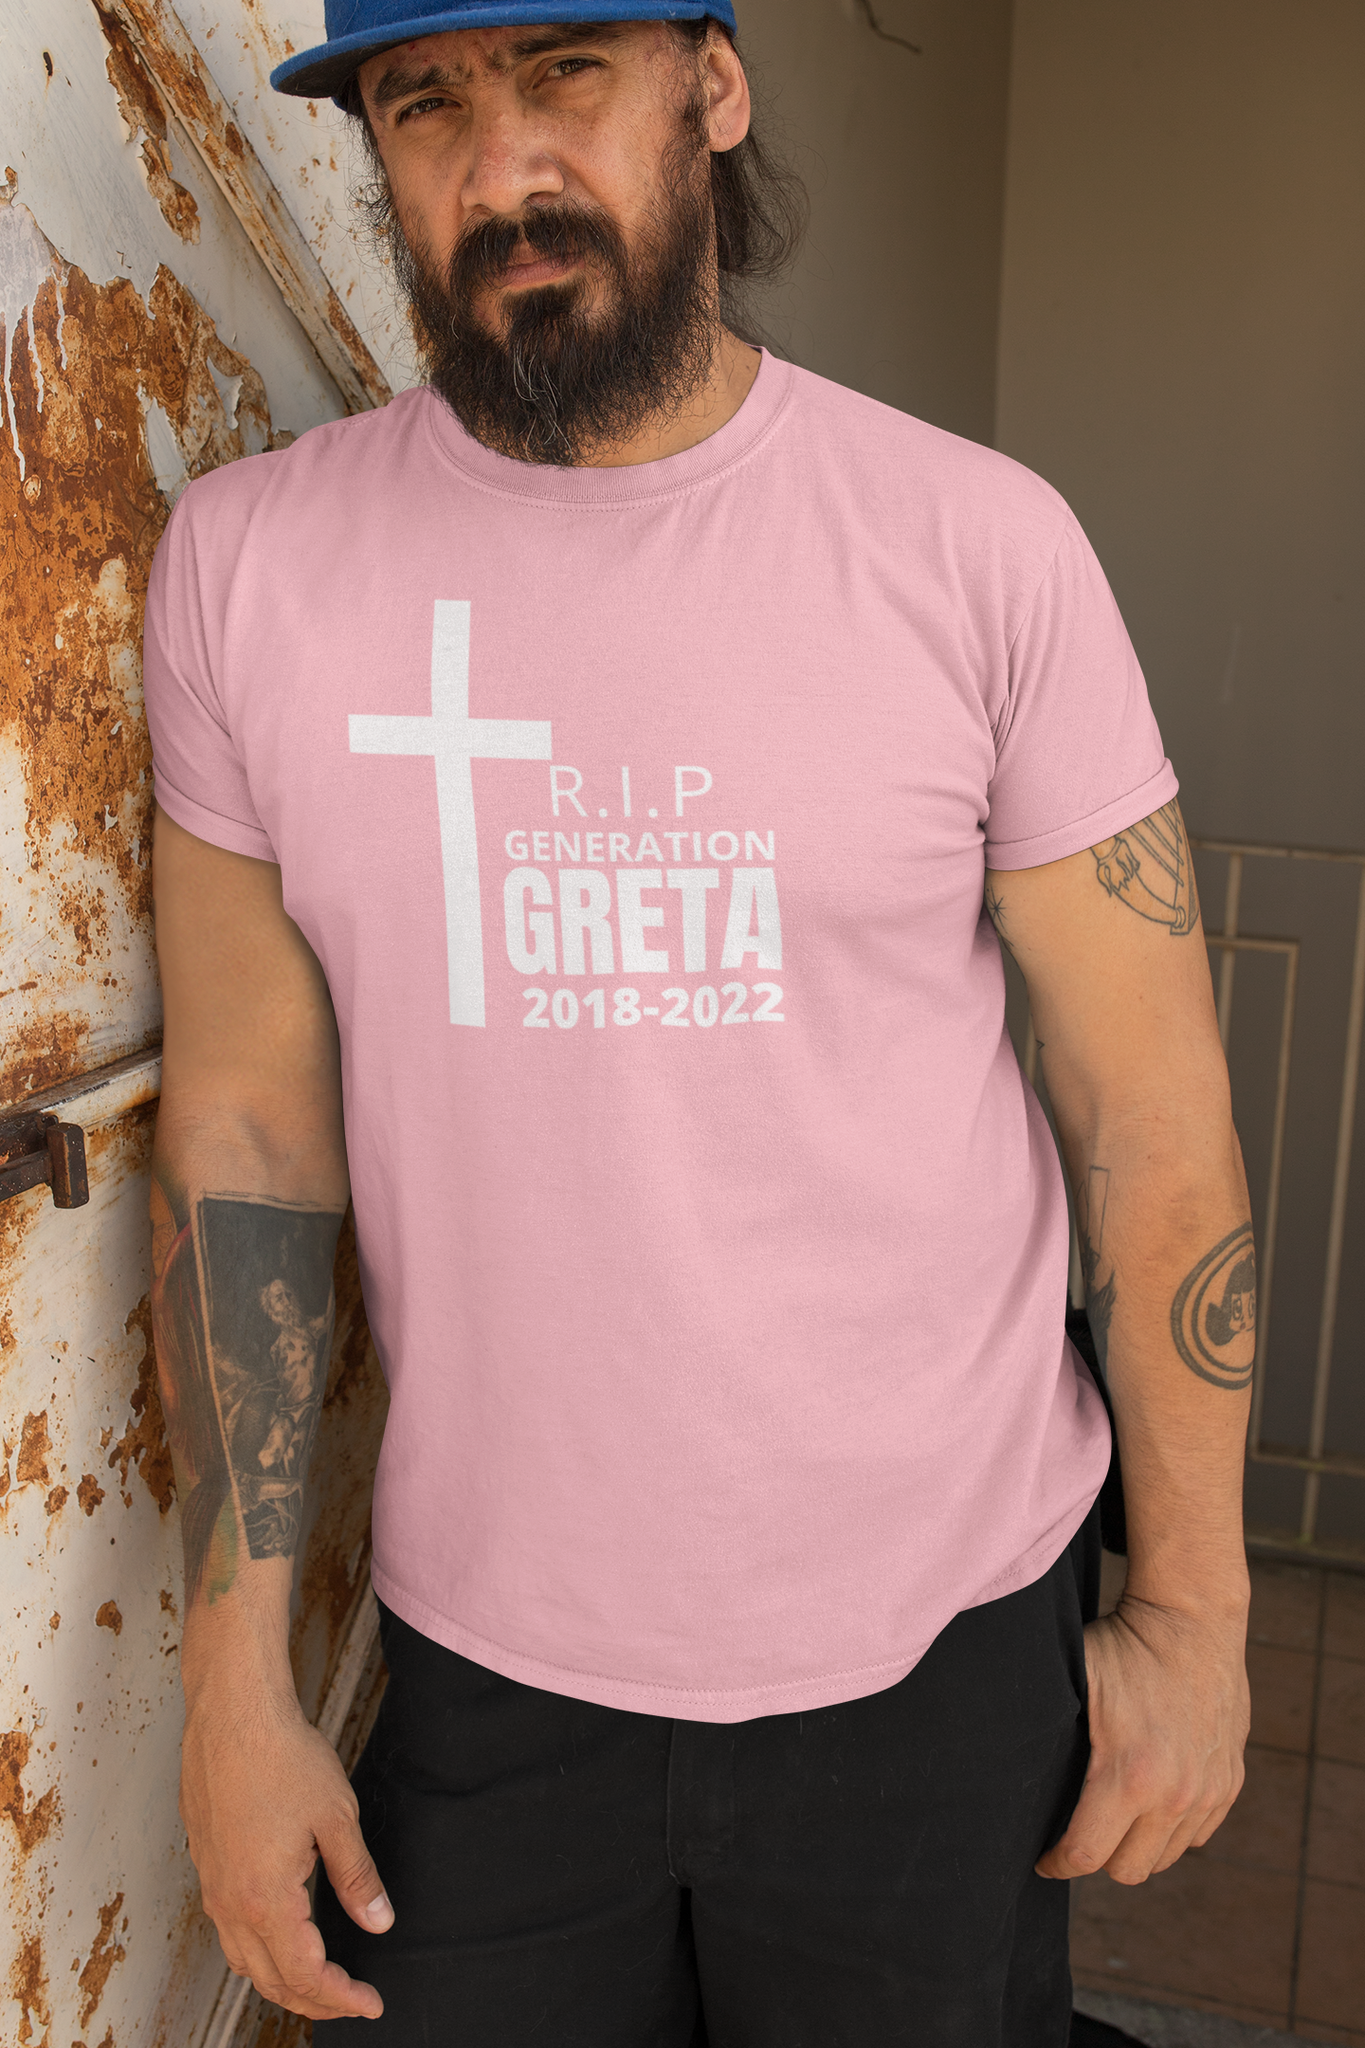 Generation Greta T-Shirt Men